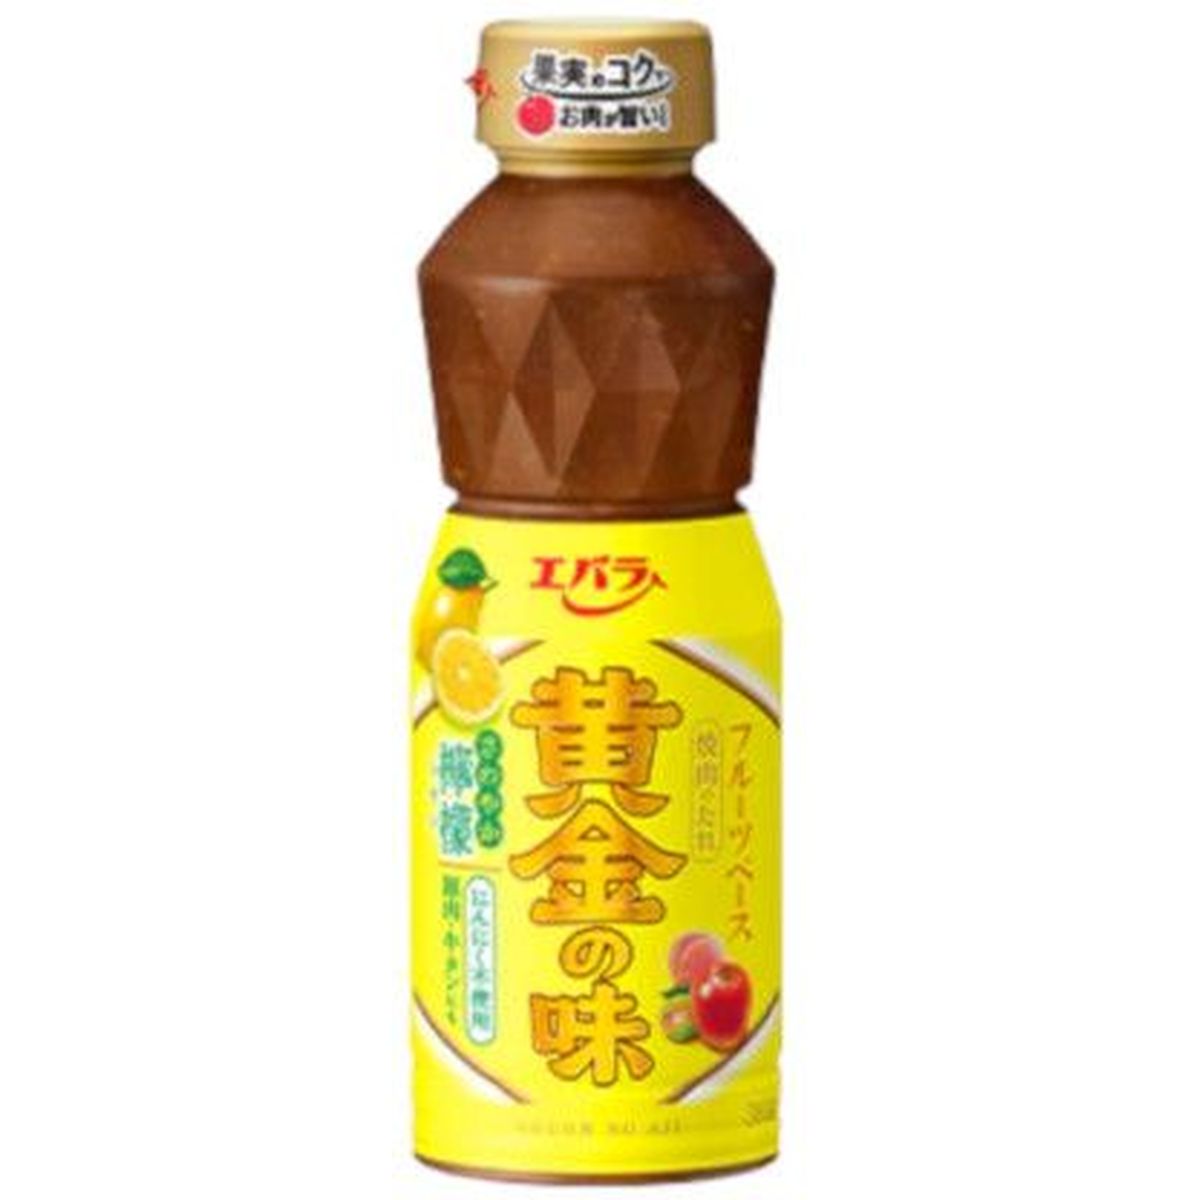 【12個入リ】エバラ 黄金ノ味 サワヤカ檸檬 355g